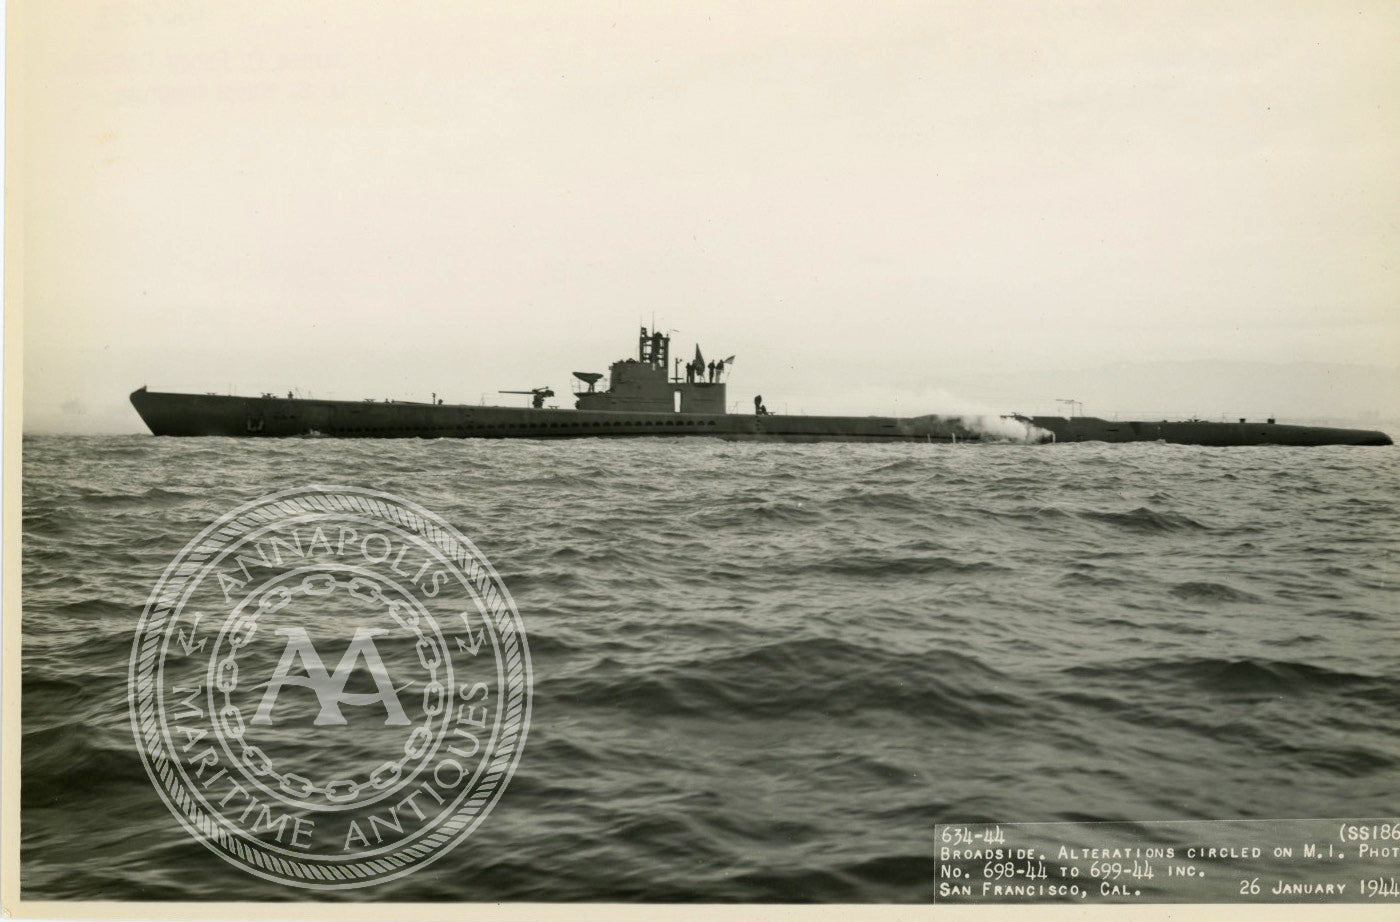 USS Stingray (SS-186) Submarine